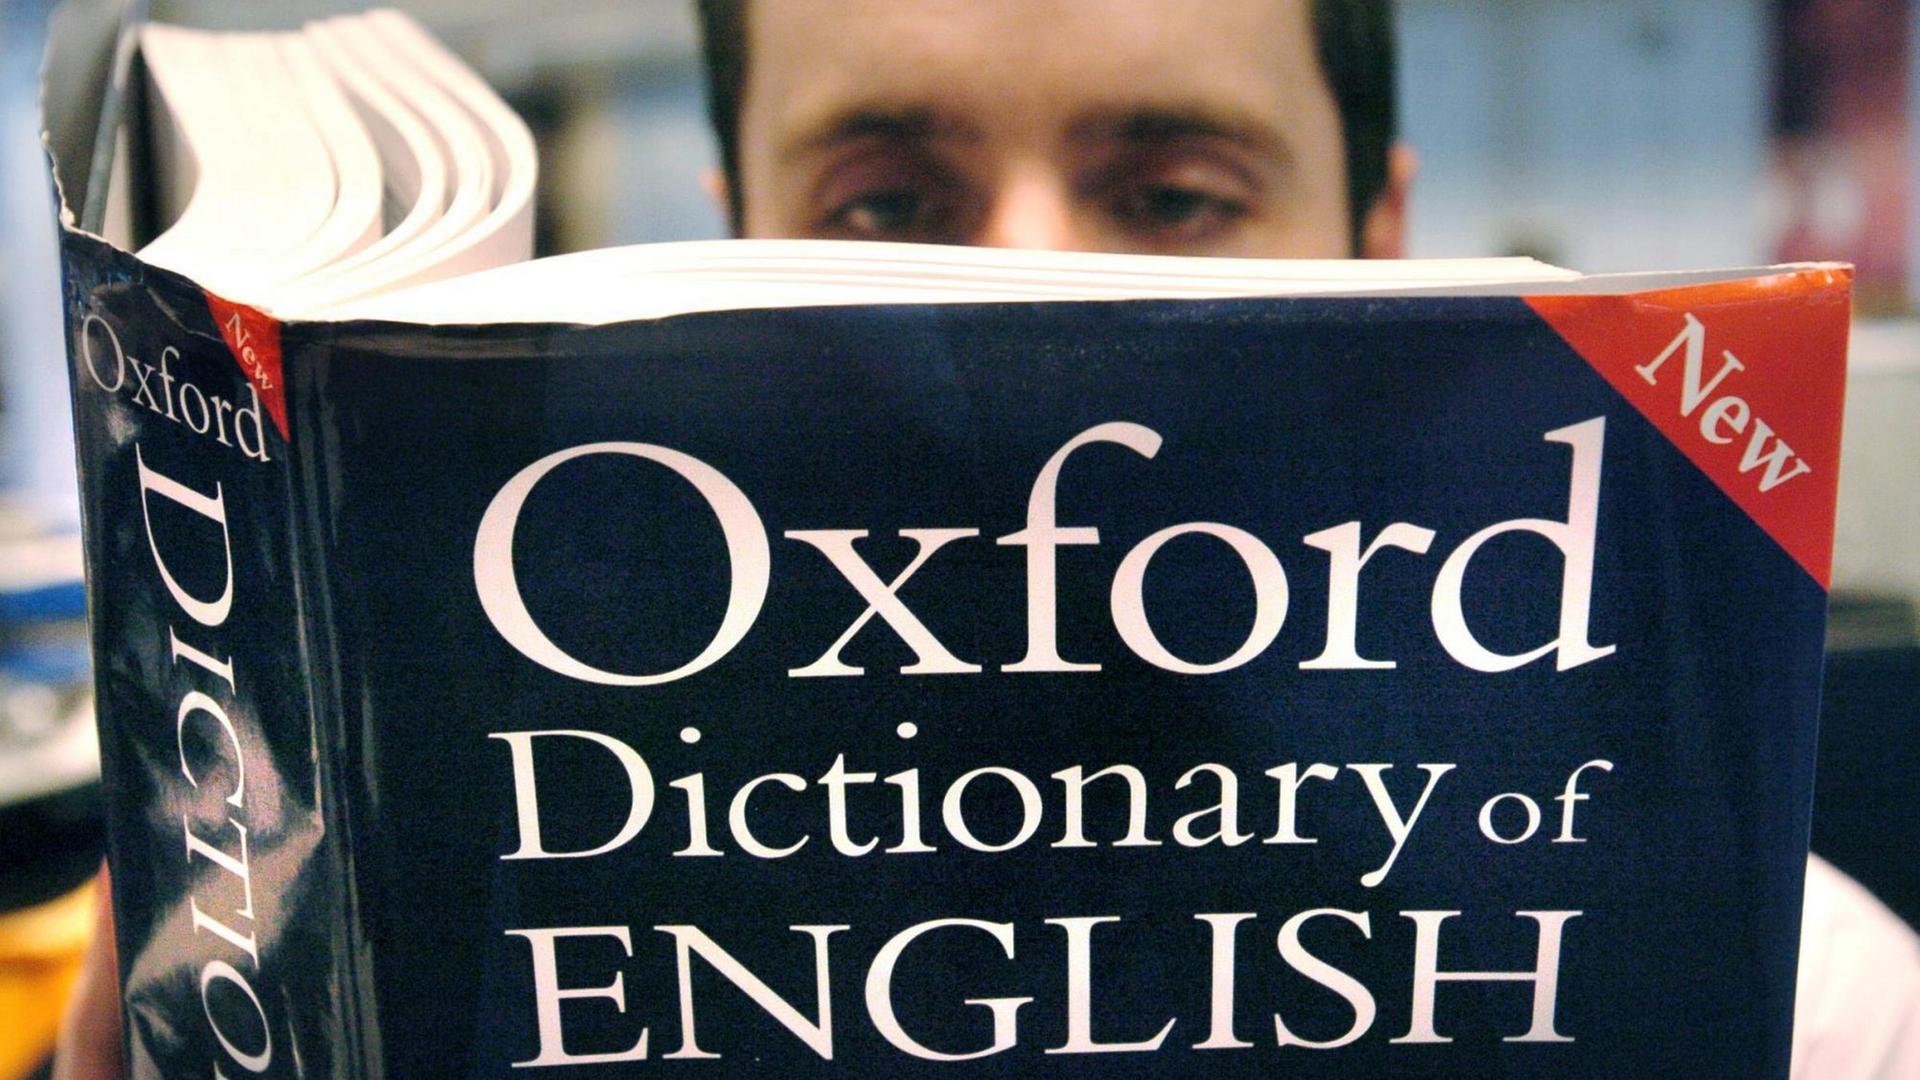 Ein Mann hält ein aufgeschlagenes Exemplar des "Oxford Dictionary of English"; die weiße Schrift steht auf dunkelblauem Grund.